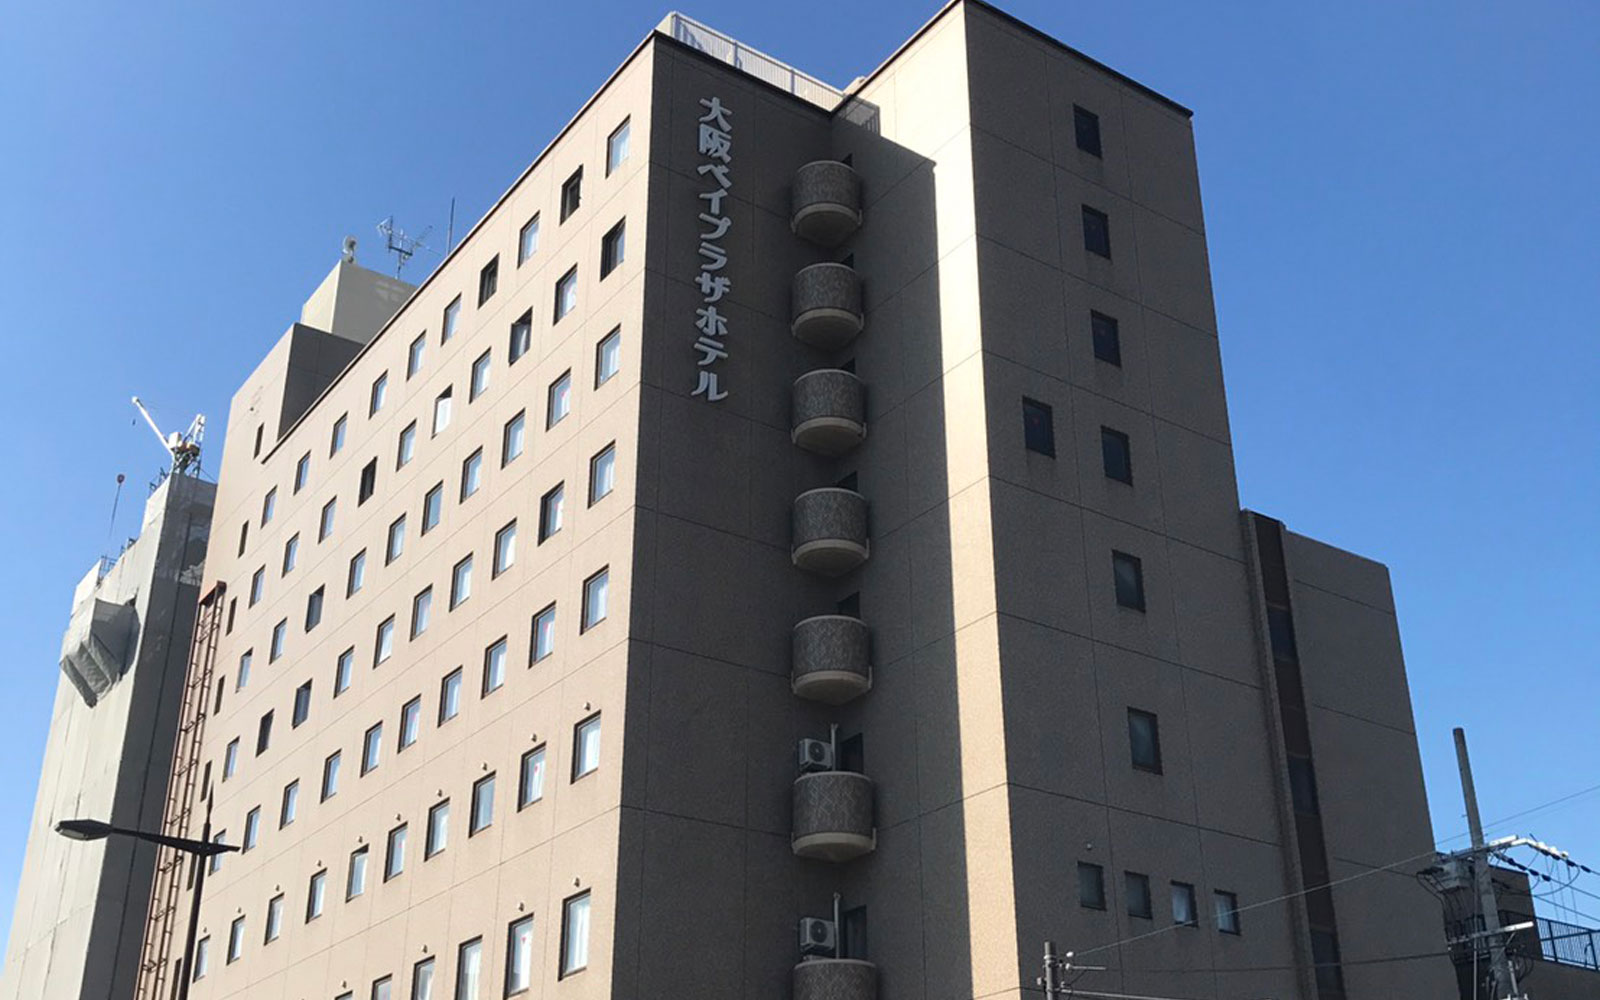 大阪ベイプラザホテル